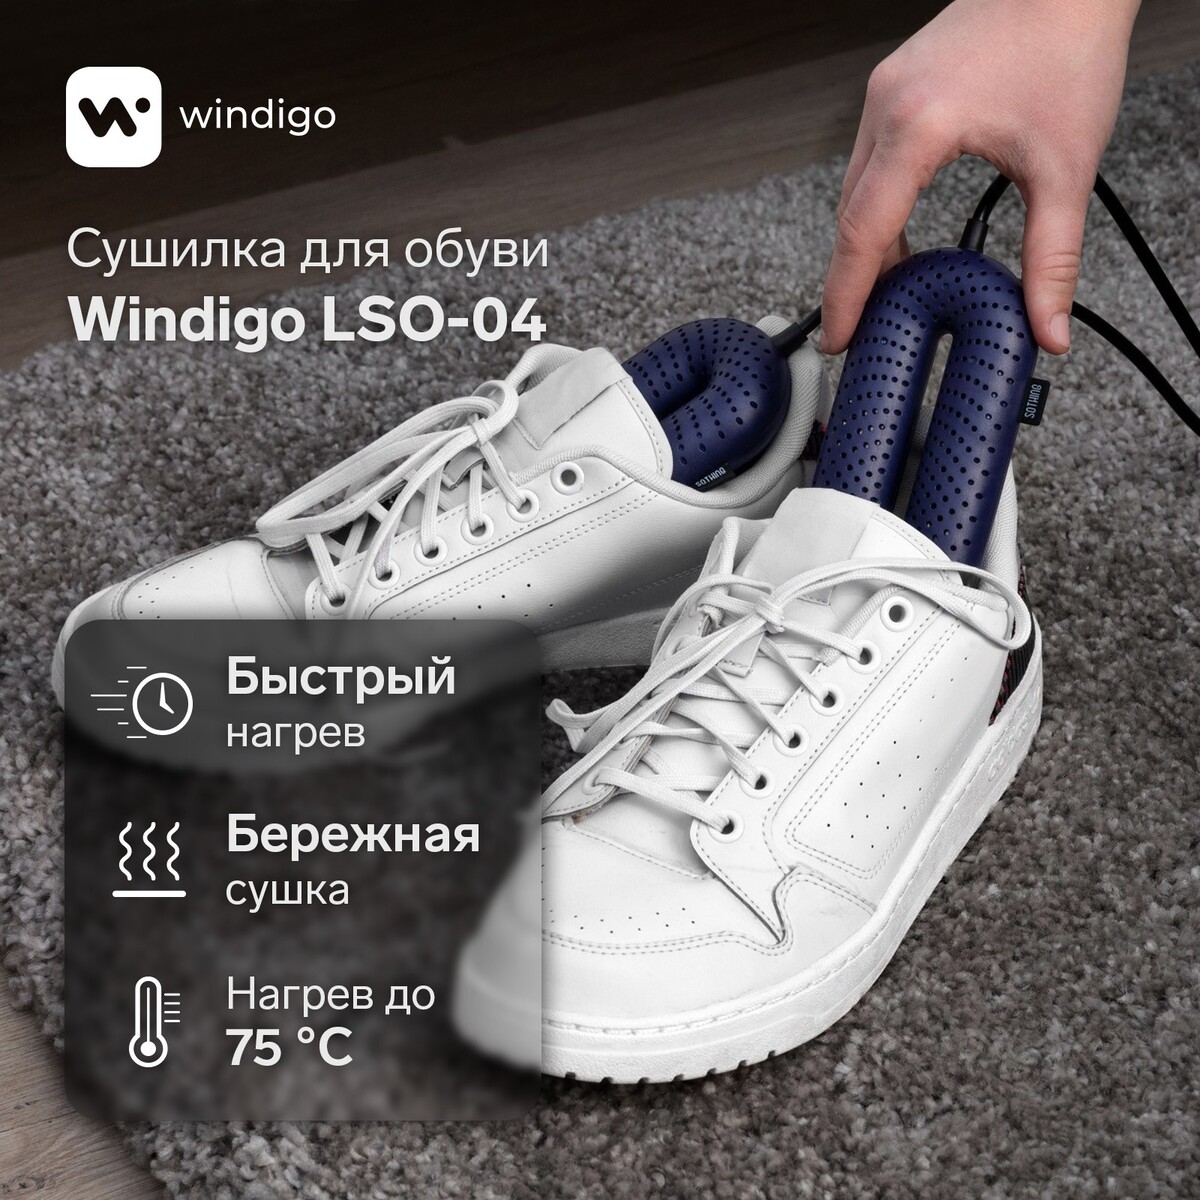 Сушилка для обуви windigo lso-04, 17 см, 20 вт, индикатор, синяя timson сушилка для обуви противогрибковая